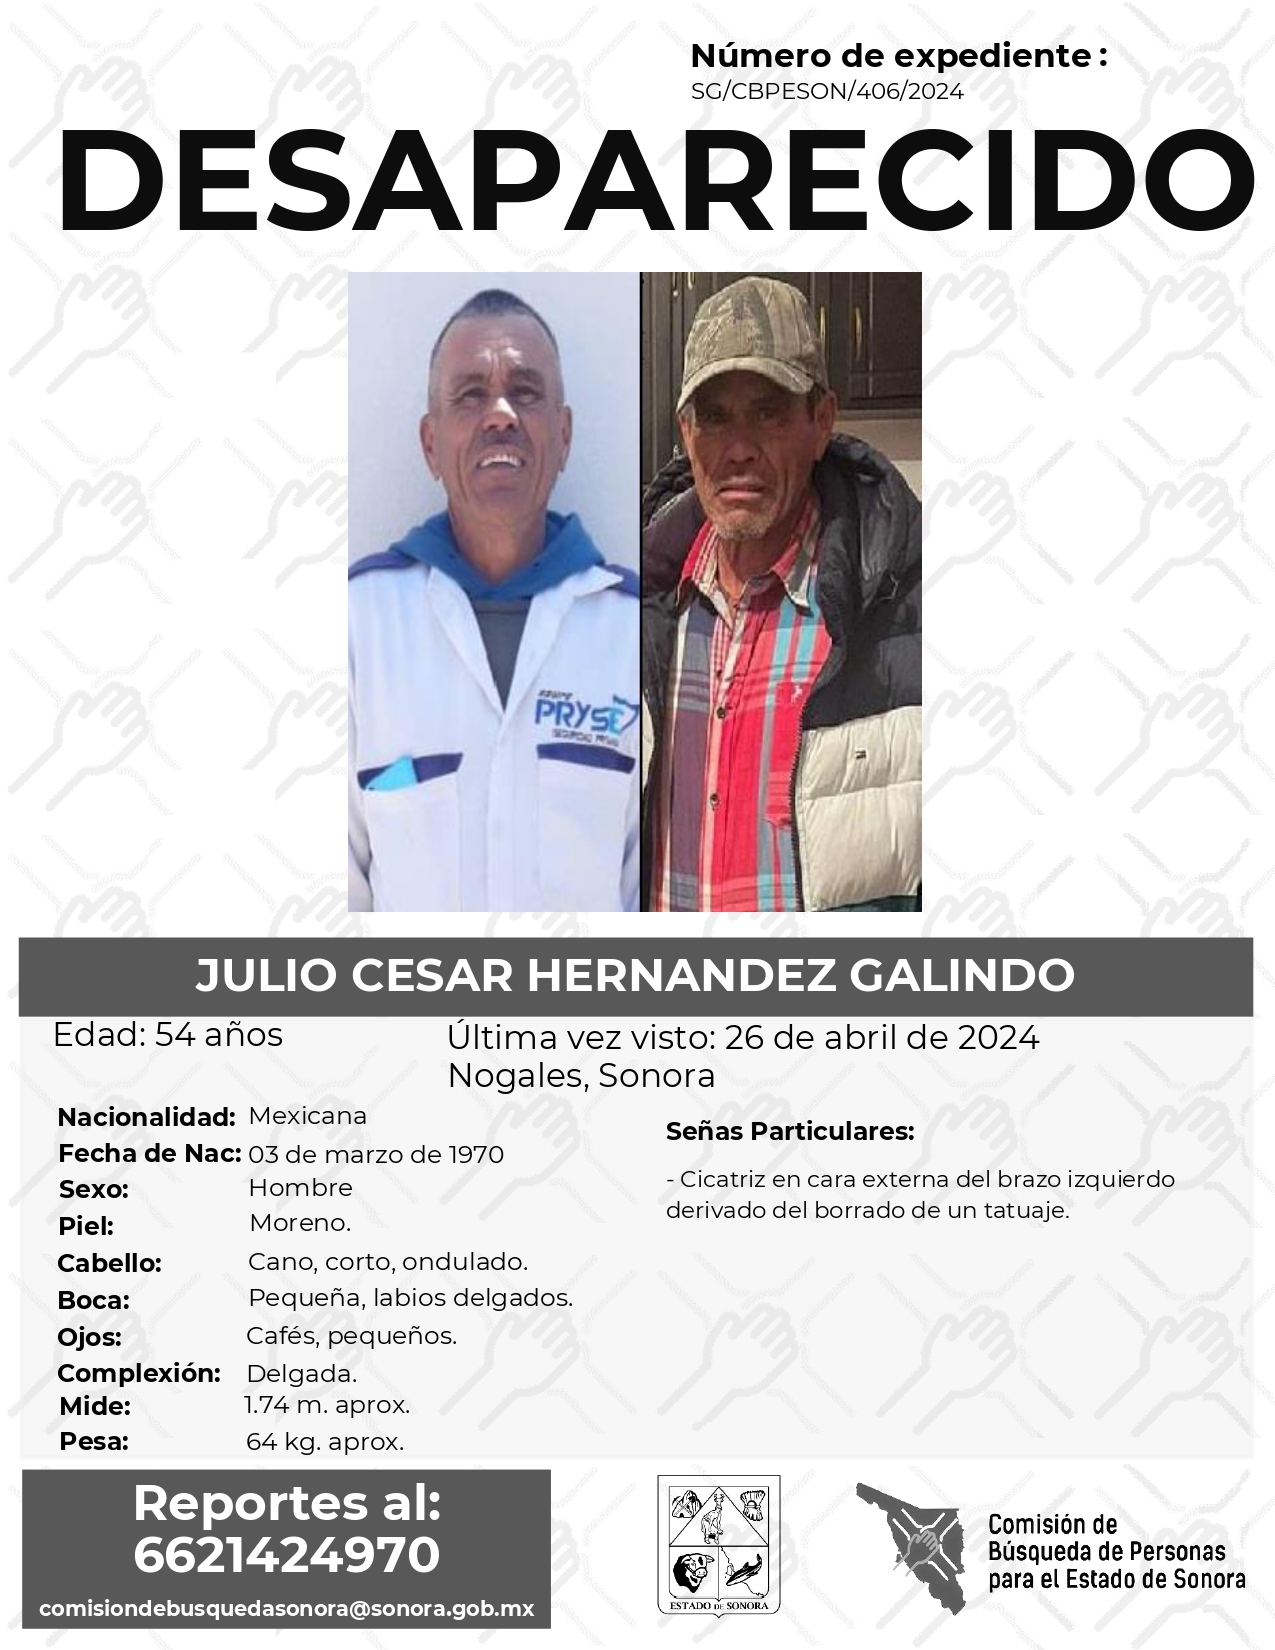 JULIO CESAR HERNANDEZ GALINDO - DESAPARECIDO